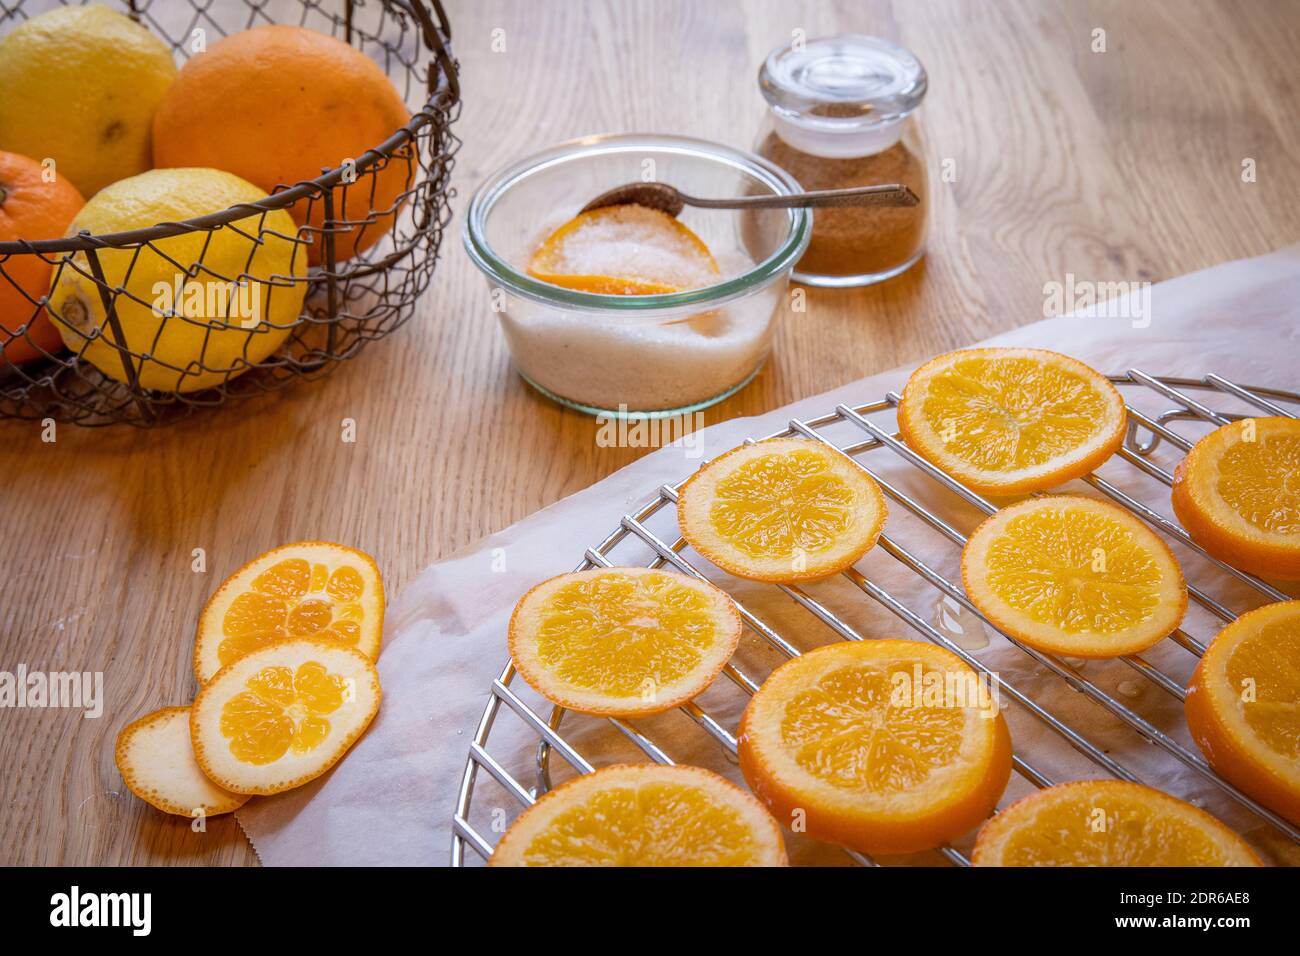 Concept d'oranges confites : un bol de sucre avec une tranche d'orange et une cuillère, un mélange d'épices pour pain d'épice et des tranches d'orange sur une table en bois. Banque D'Images